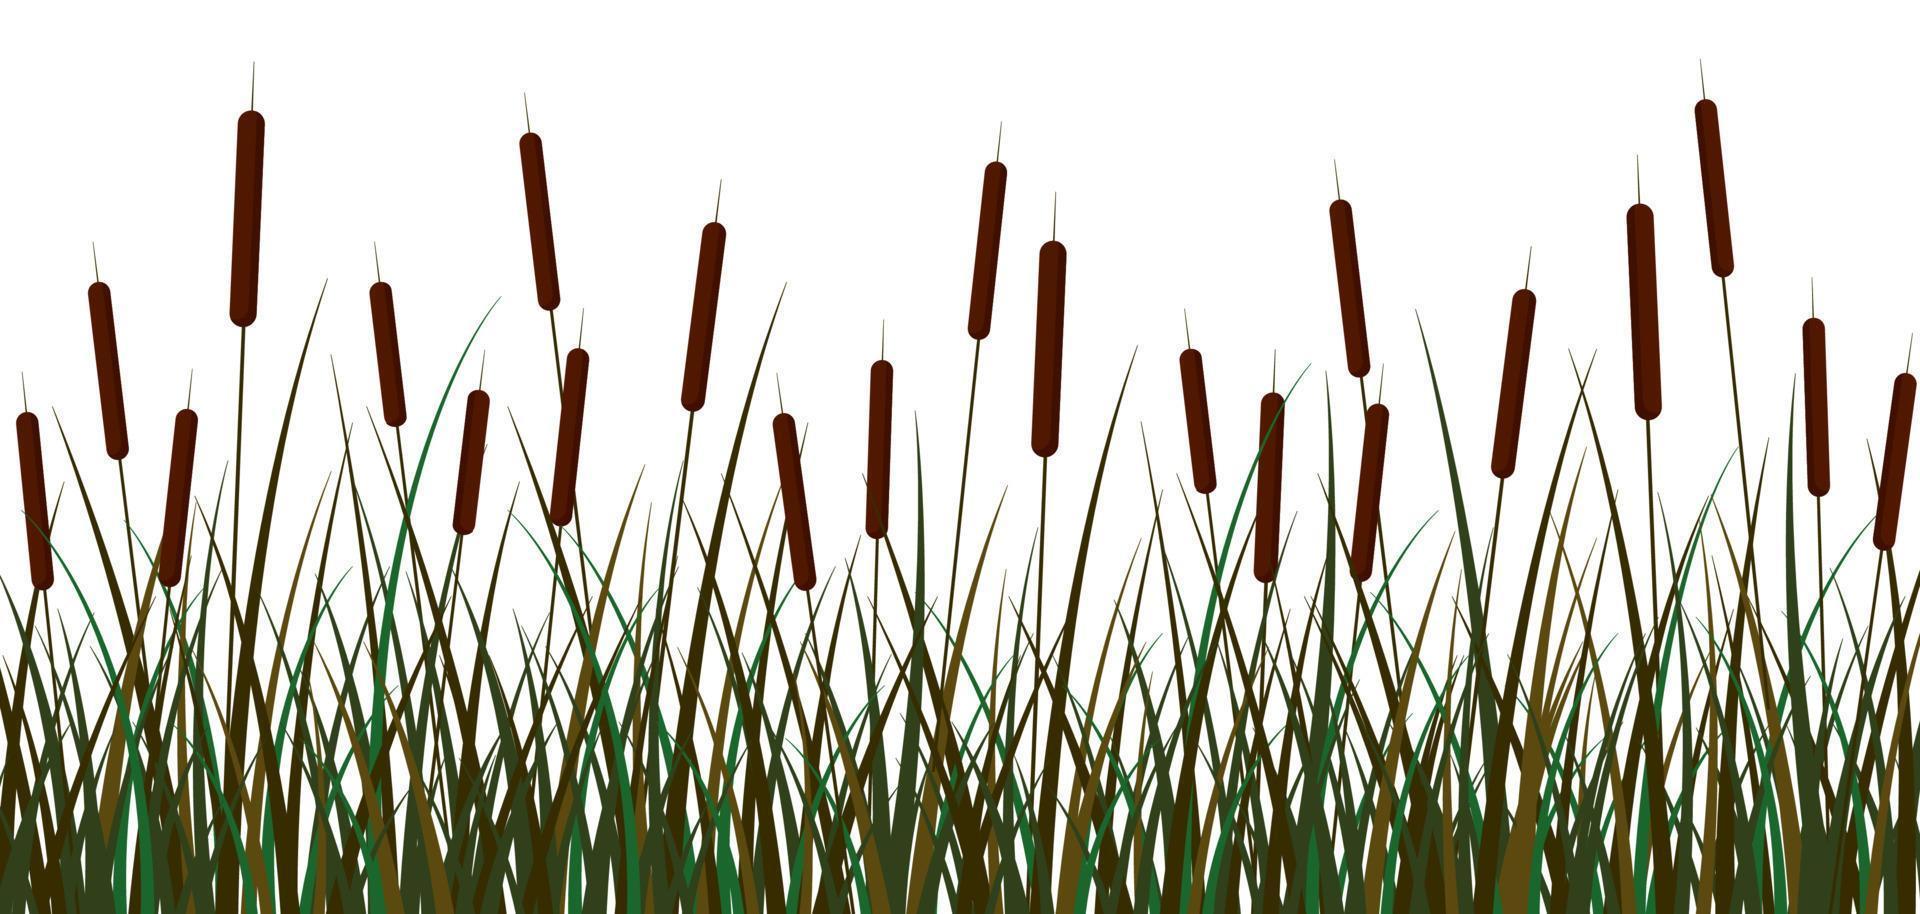 fundo de juncos do pântano. verdes pântano bastões cana marrom inflorescências arbusto com folhagem espaço aberto lindos vetoriais botânico taboa ornamento clipart lagoa rio. vetor